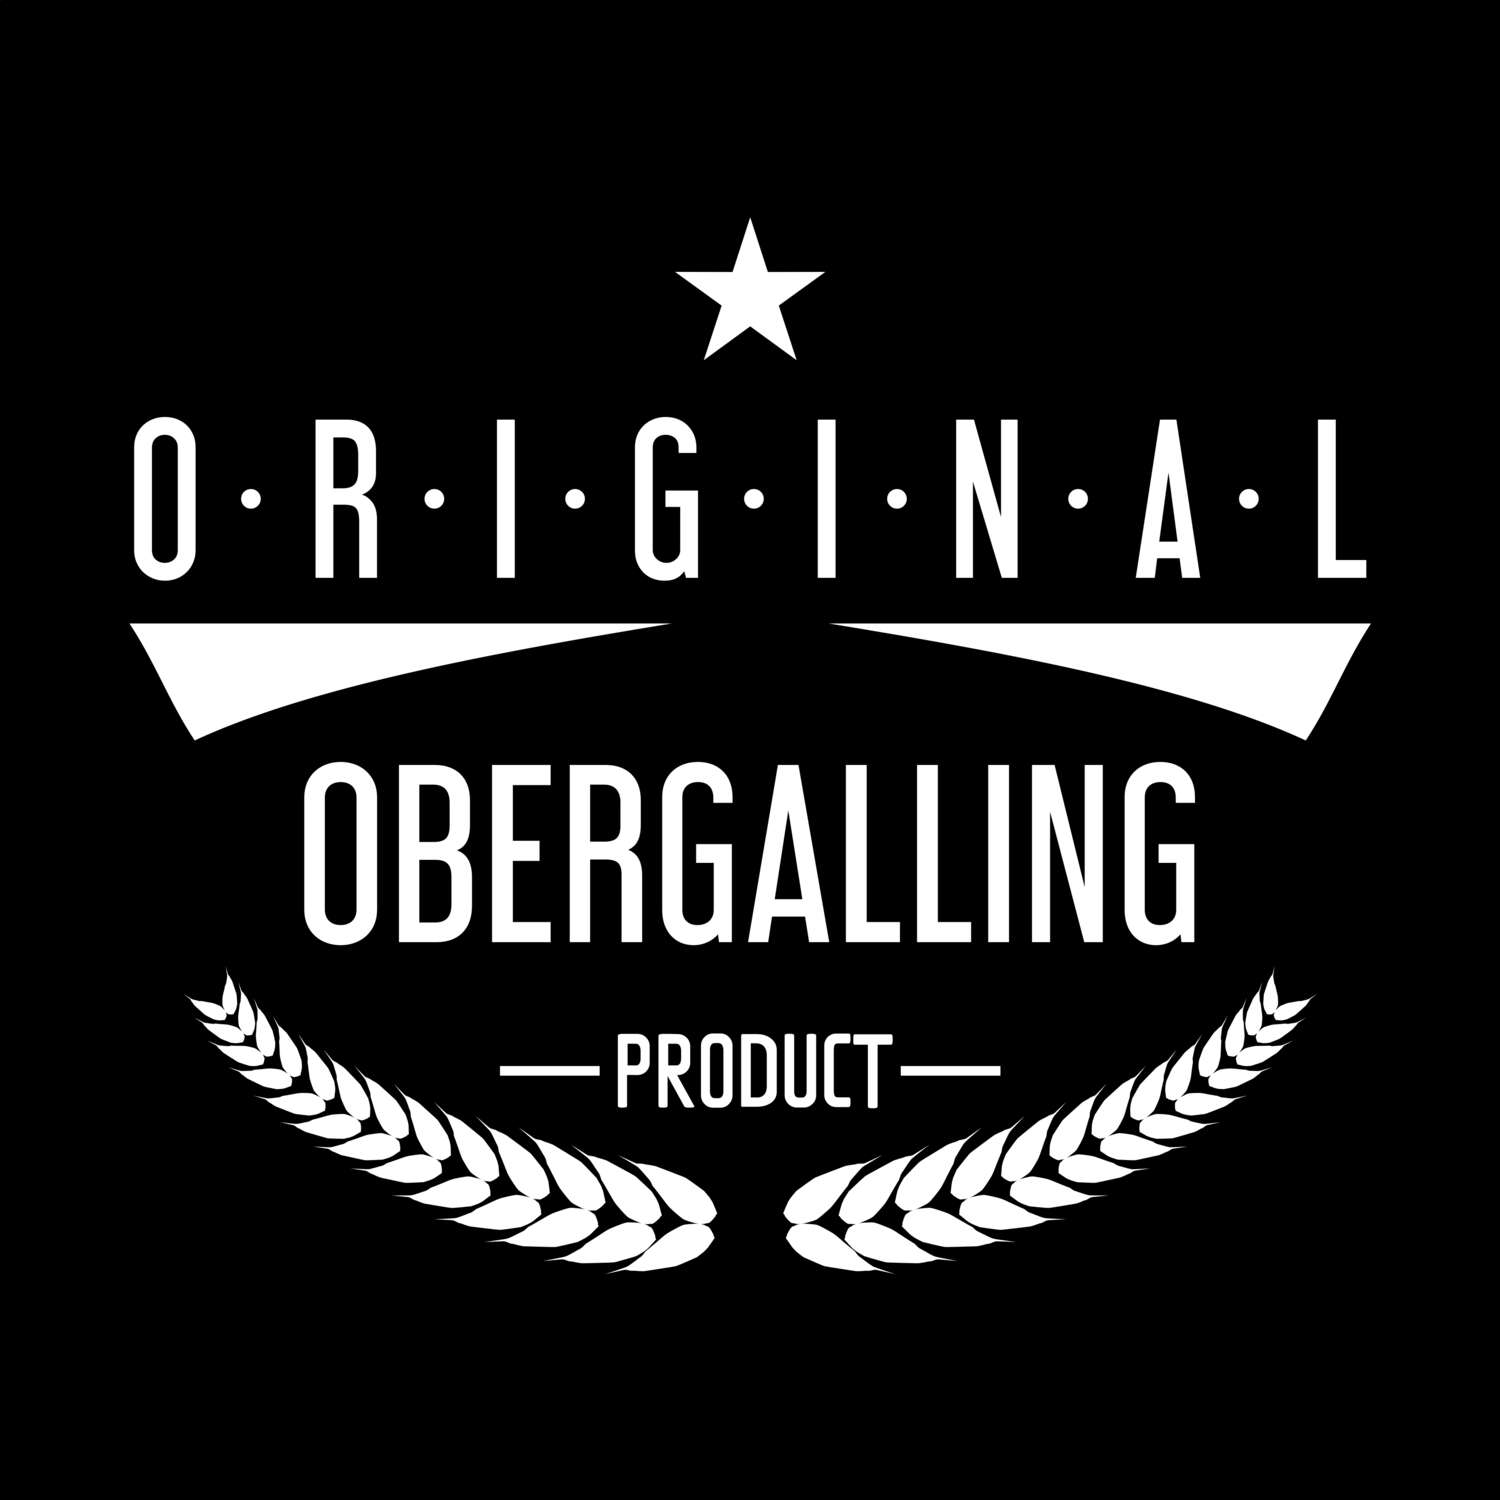 Obergalling T-Shirt »Original Product«